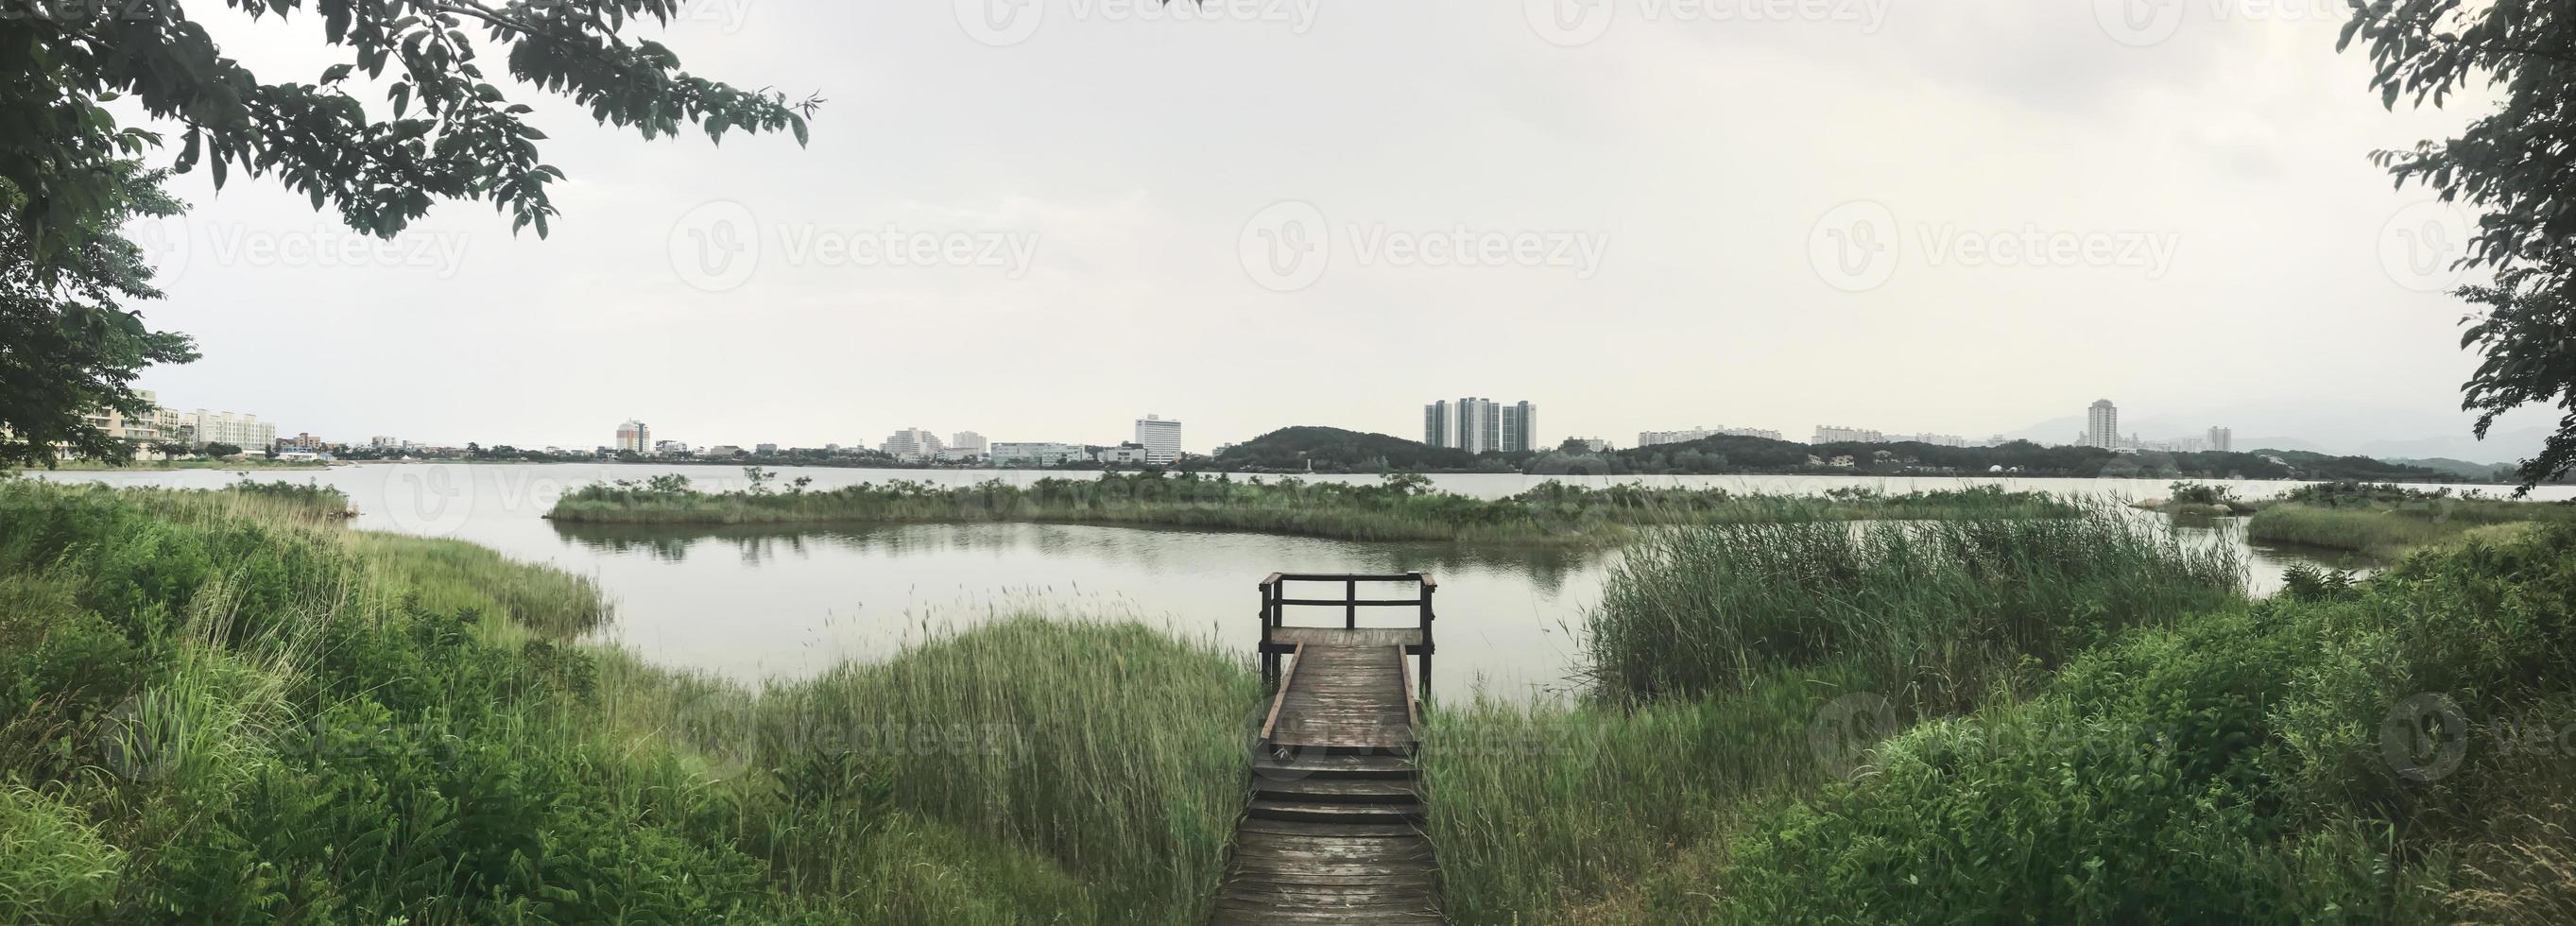 panorama. il molo di legno ricoperto di canne sul lago della città di sokcho. Corea del Sud foto